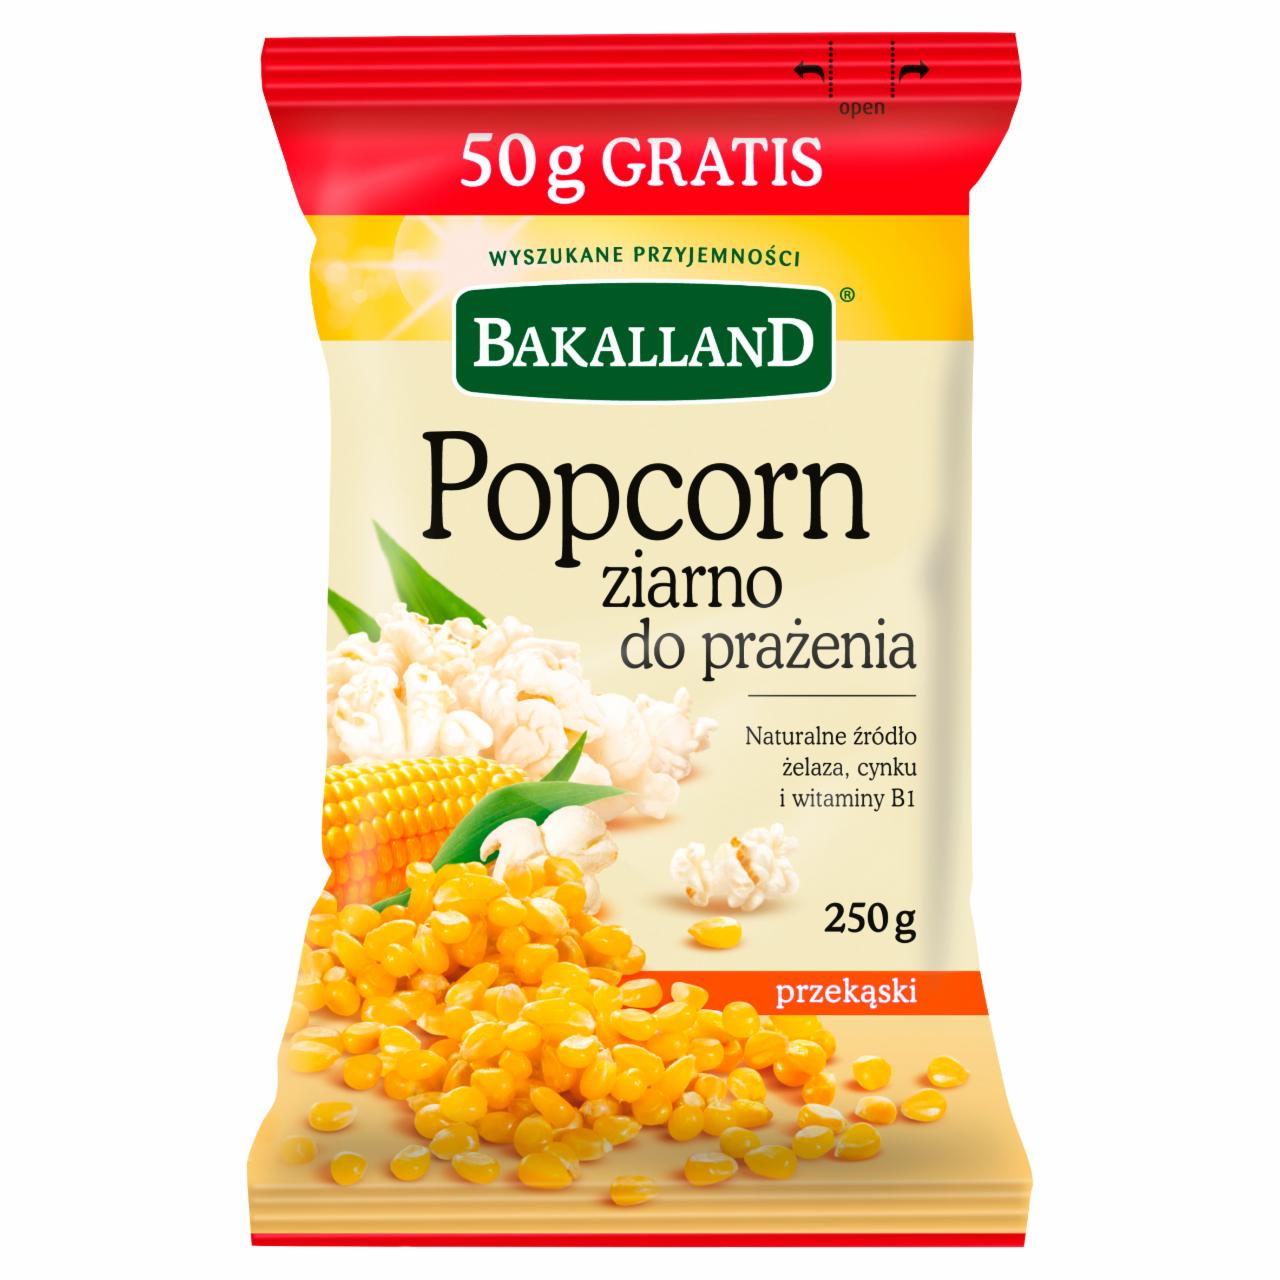 Zdjęcia - Bakalland Popcorn ziarno do prażenia 250 g